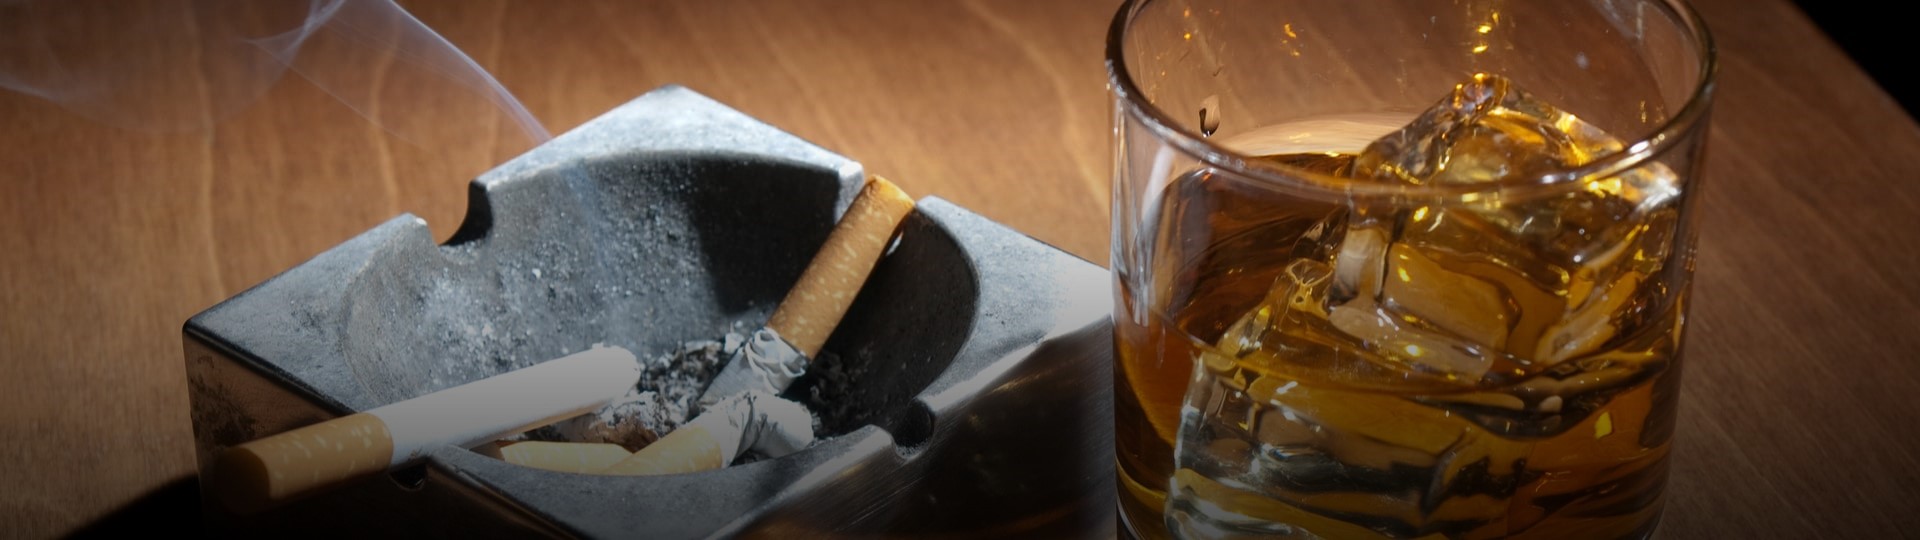 Konzumace alkoholu a cigaret vzrostla